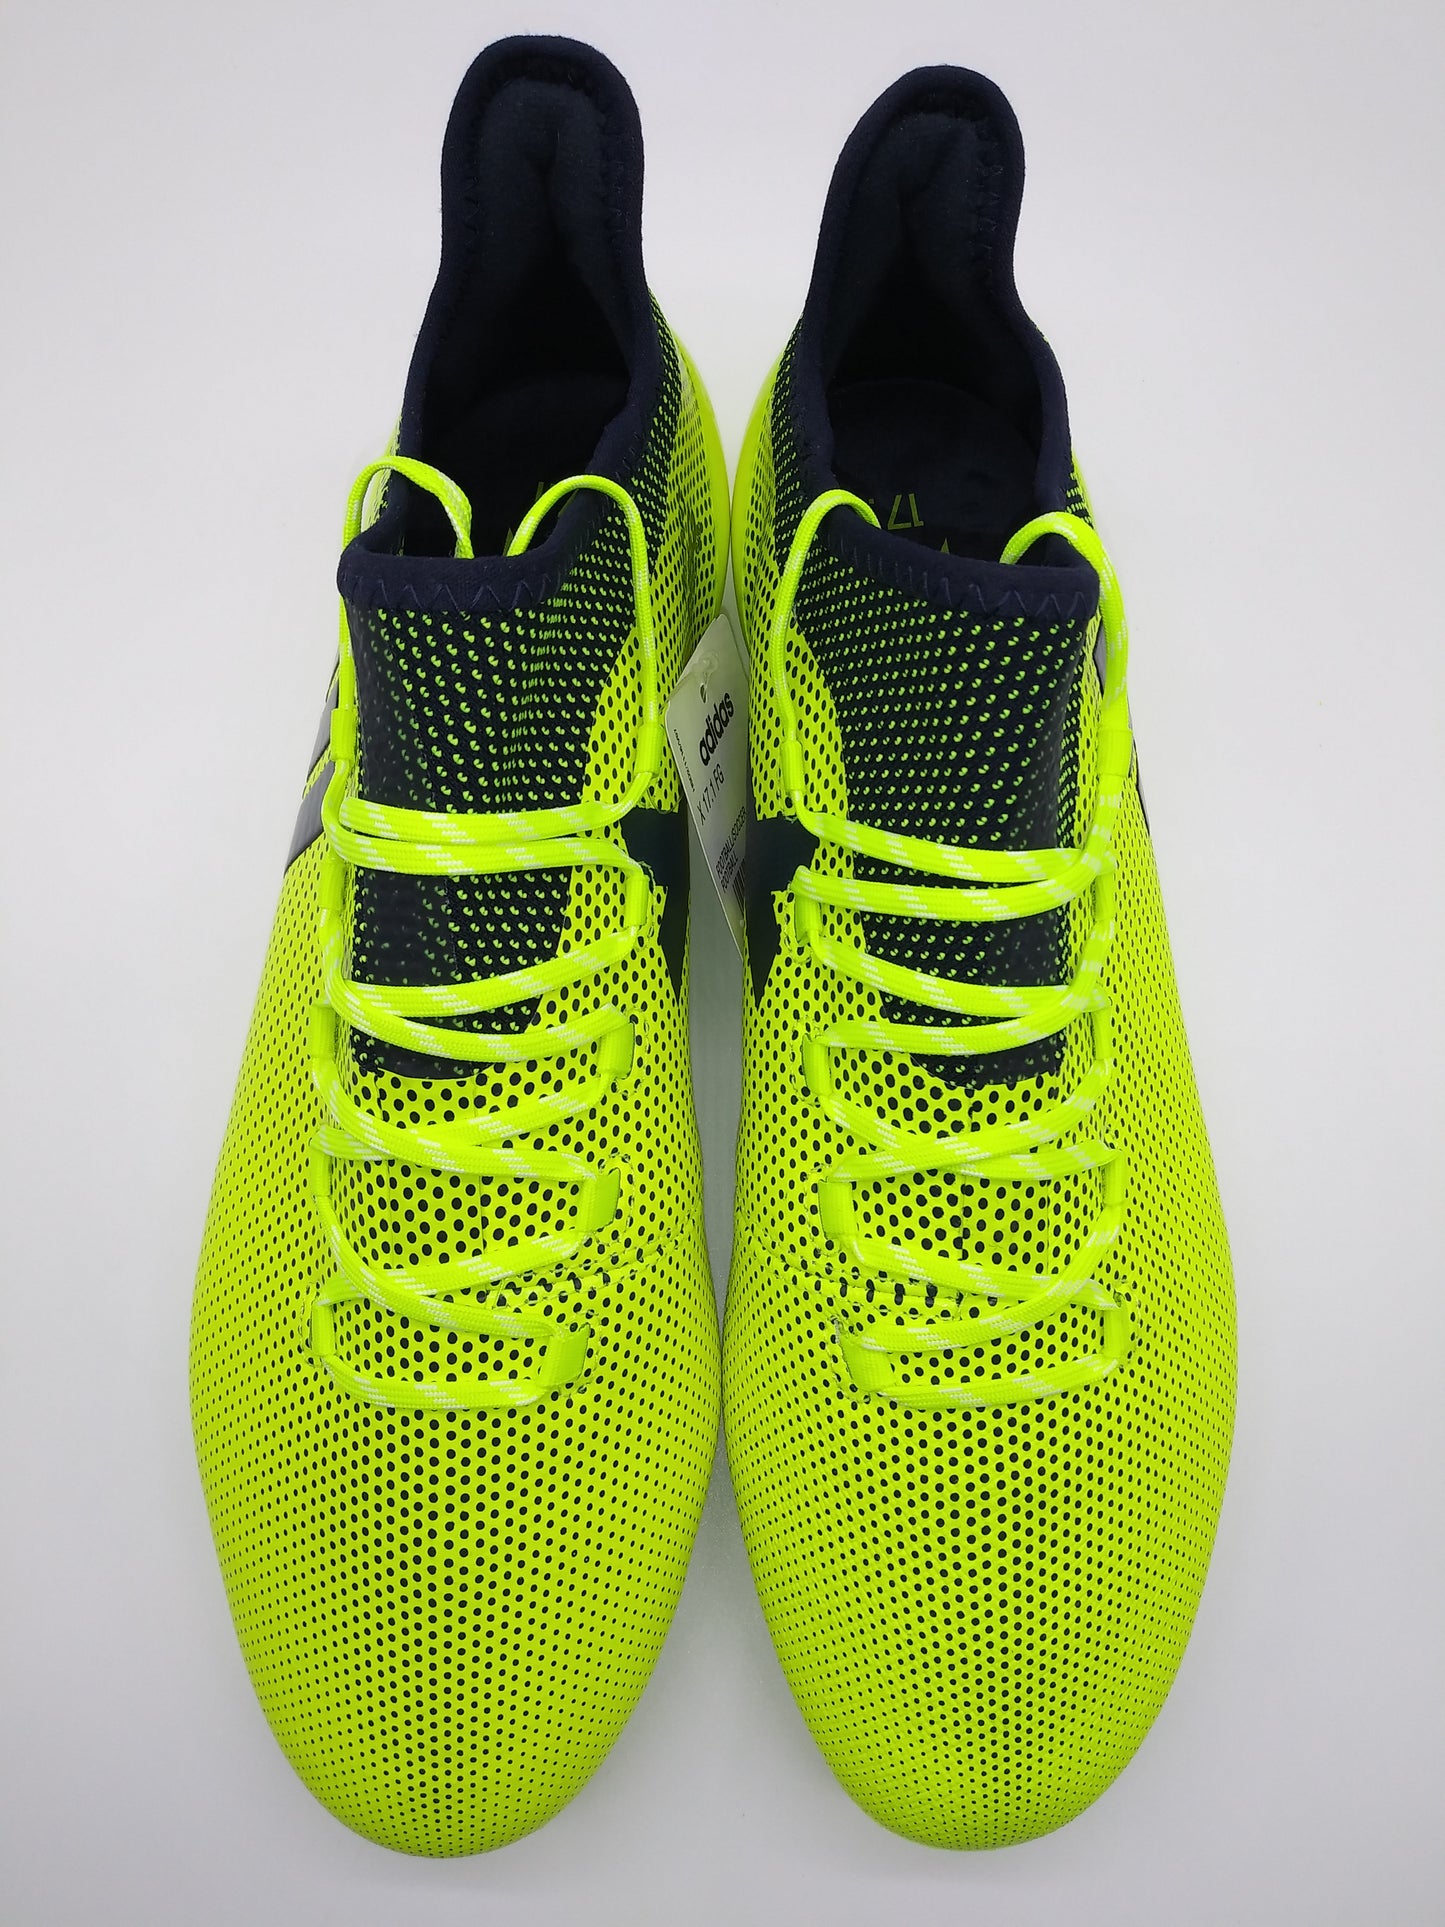 Adidas X 17.1 FG Yellow Black